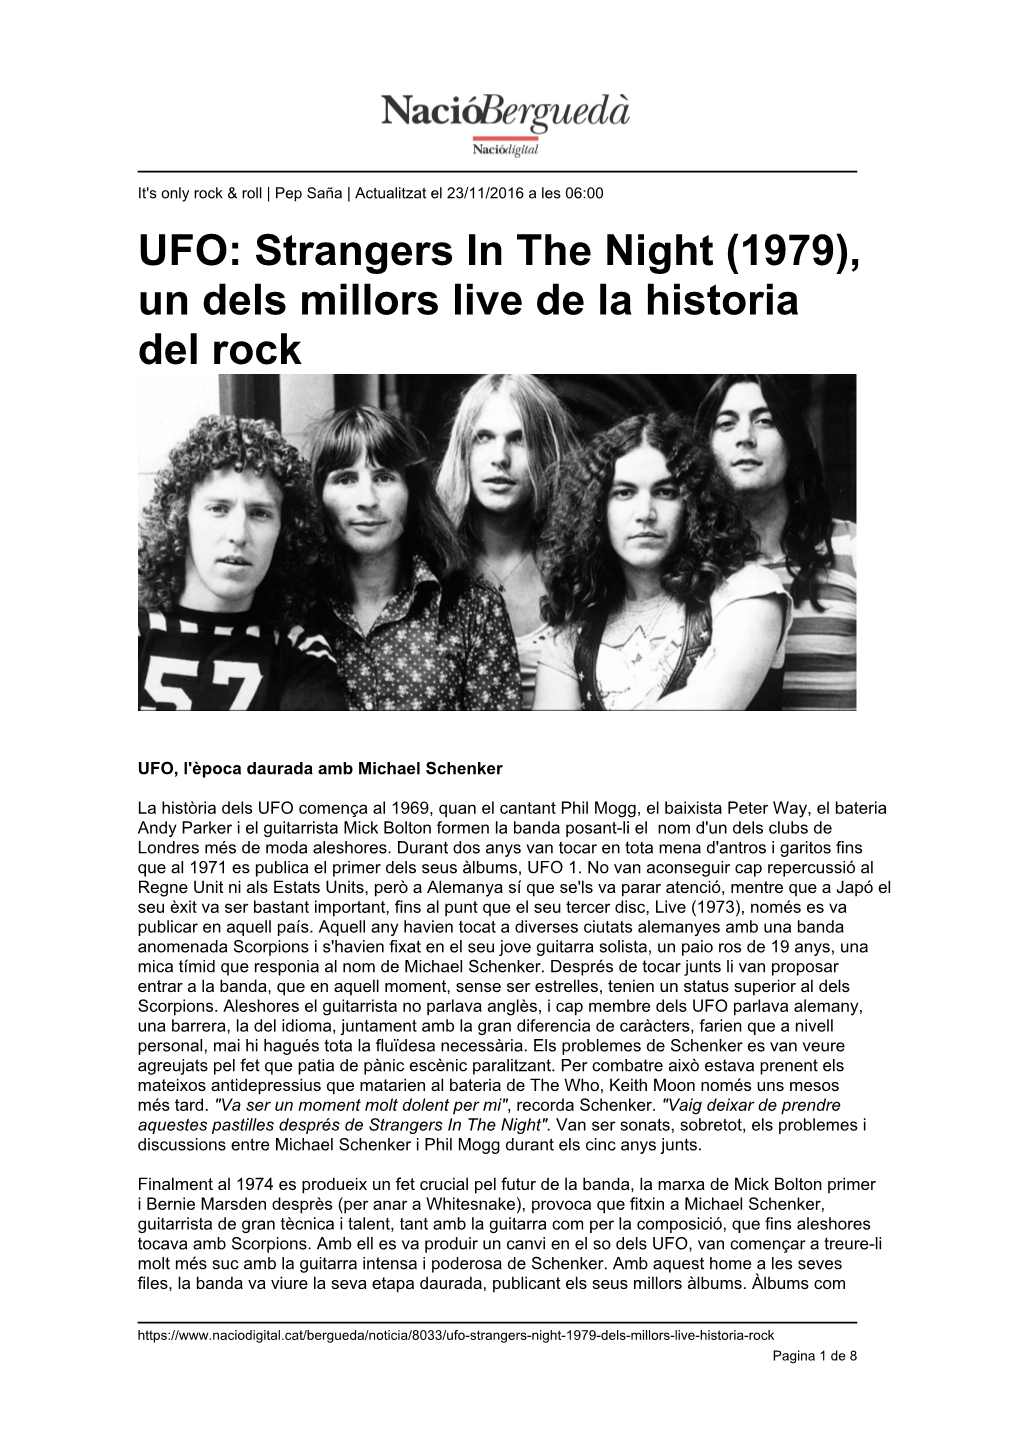 UFO: Strangers in the Night (1979), Un Dels Millors Live De La Historia Del Rock